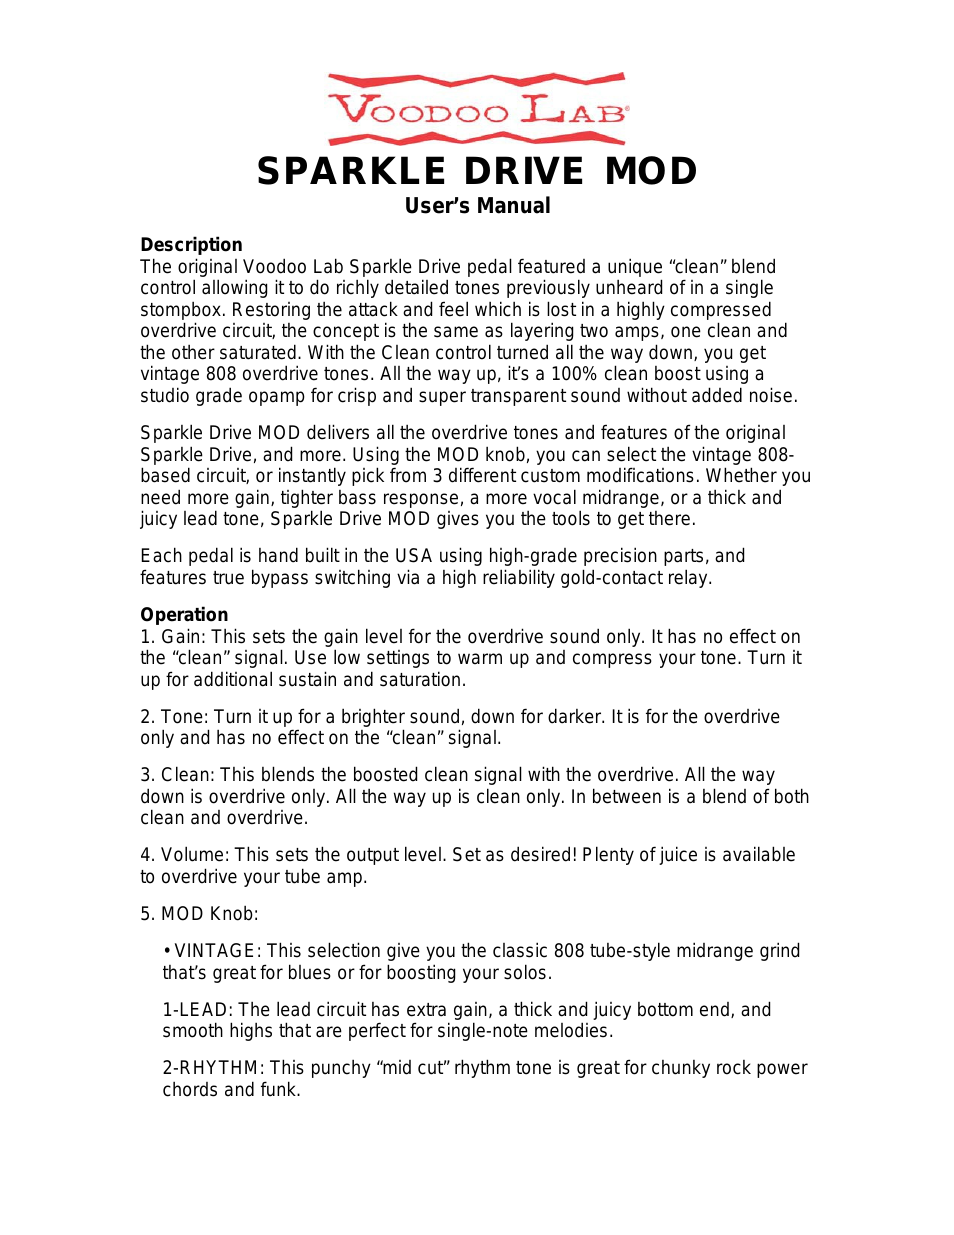 Sparkle Drive MOD